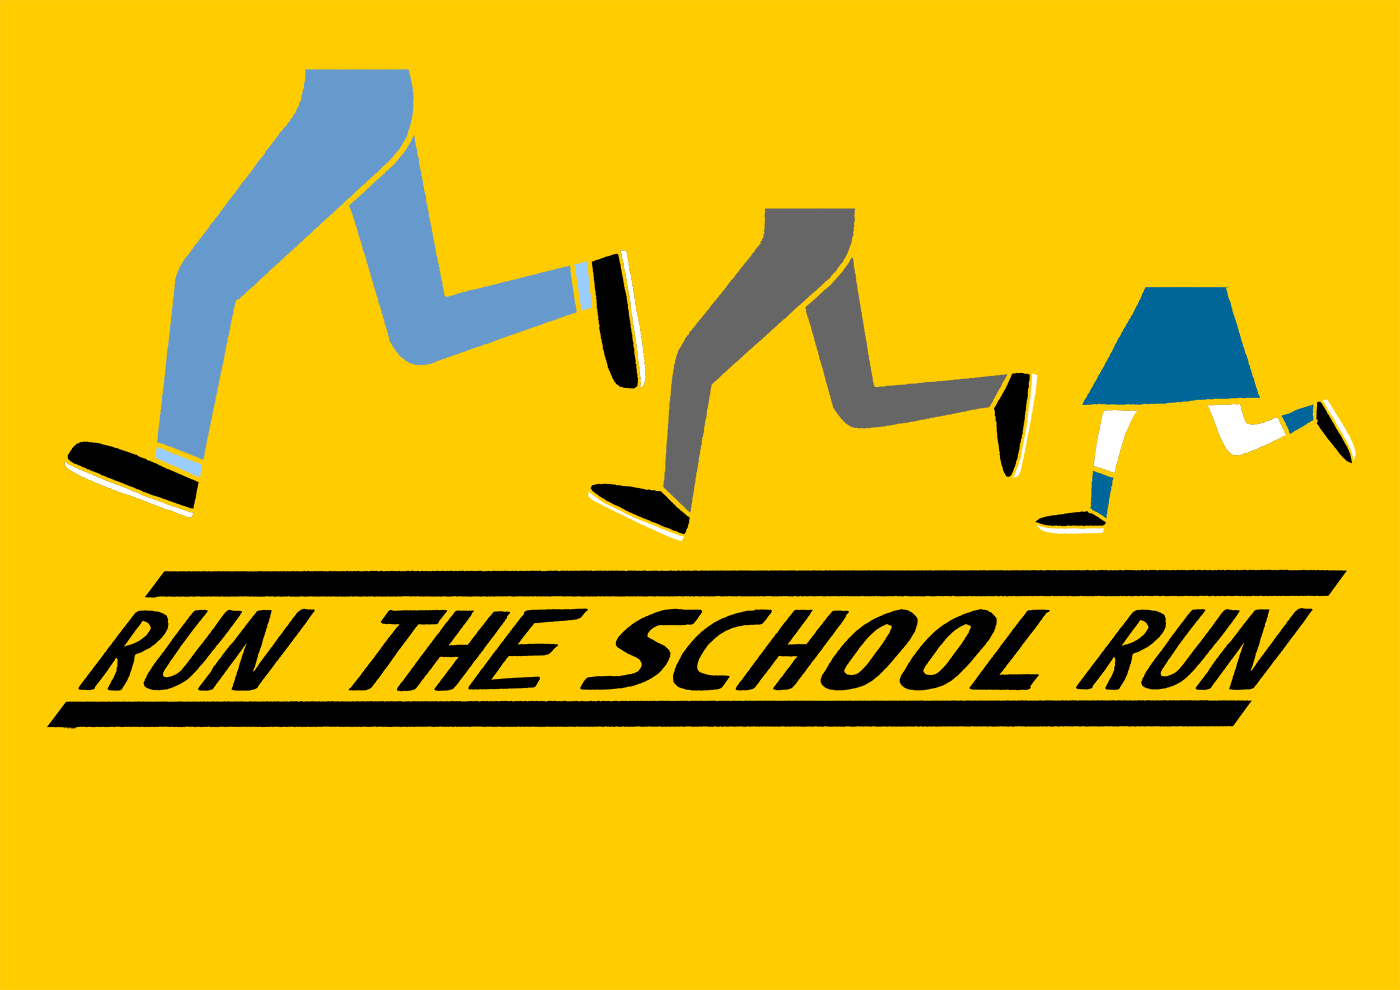 Run the school run